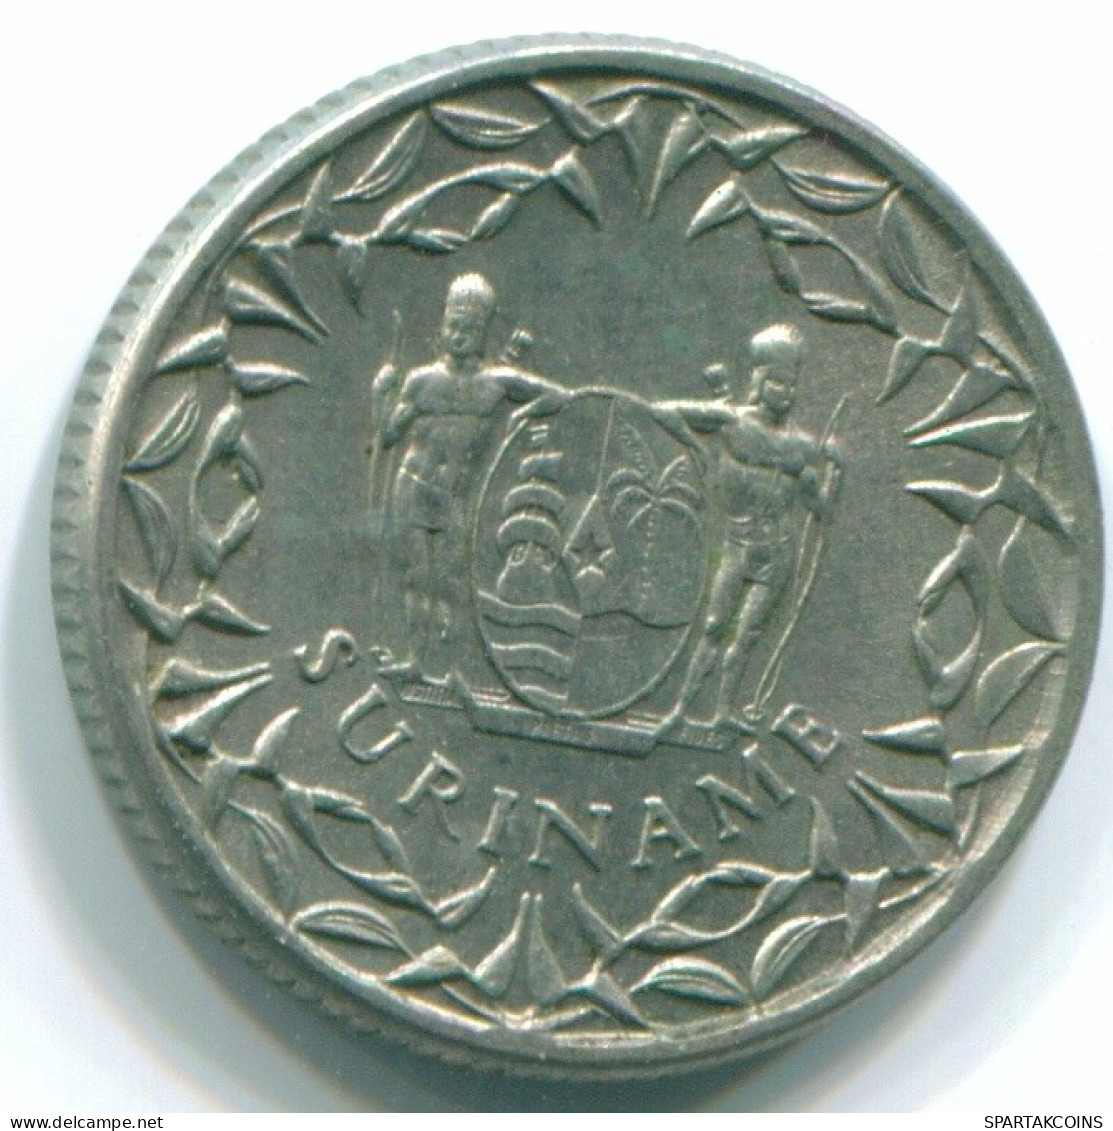 10 CENTS 1966 SURINAM NIEDERLANDE Nickel Koloniale Münze #S13244.D.A - Surinam 1975 - ...